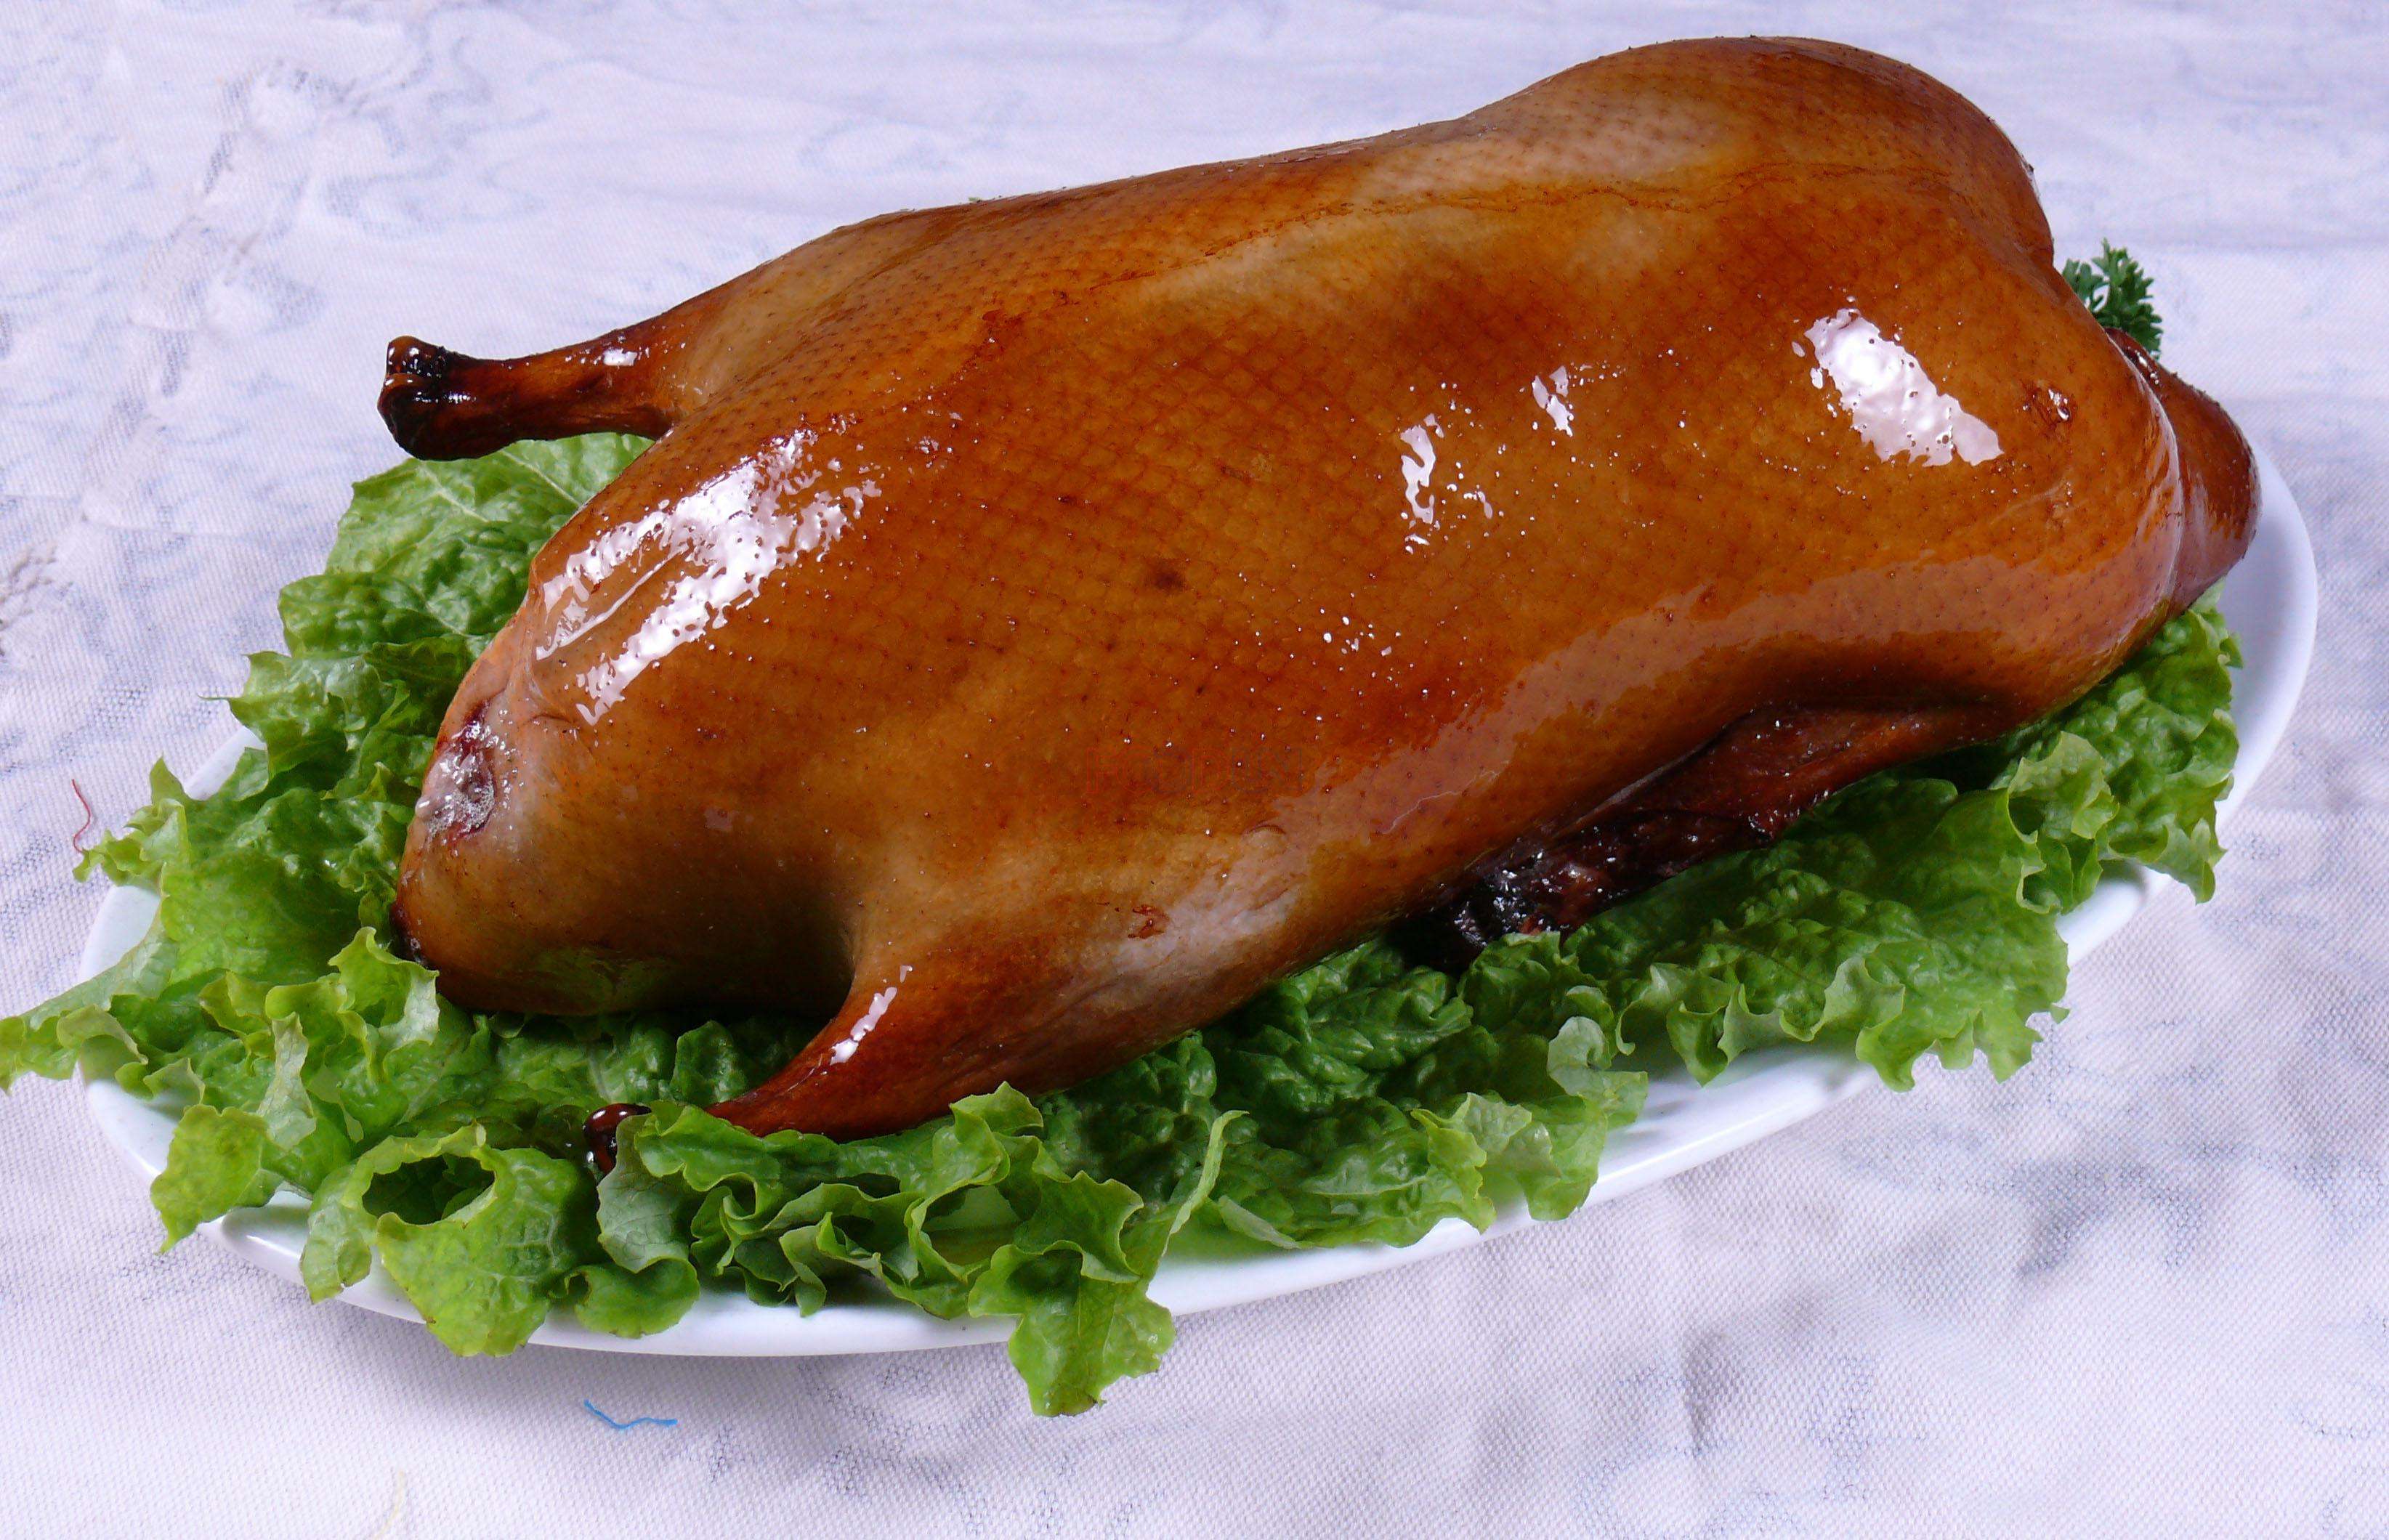 说到烤鸭,除了北京烤鸭外还有云南宜良烤鸭也是久负盛名